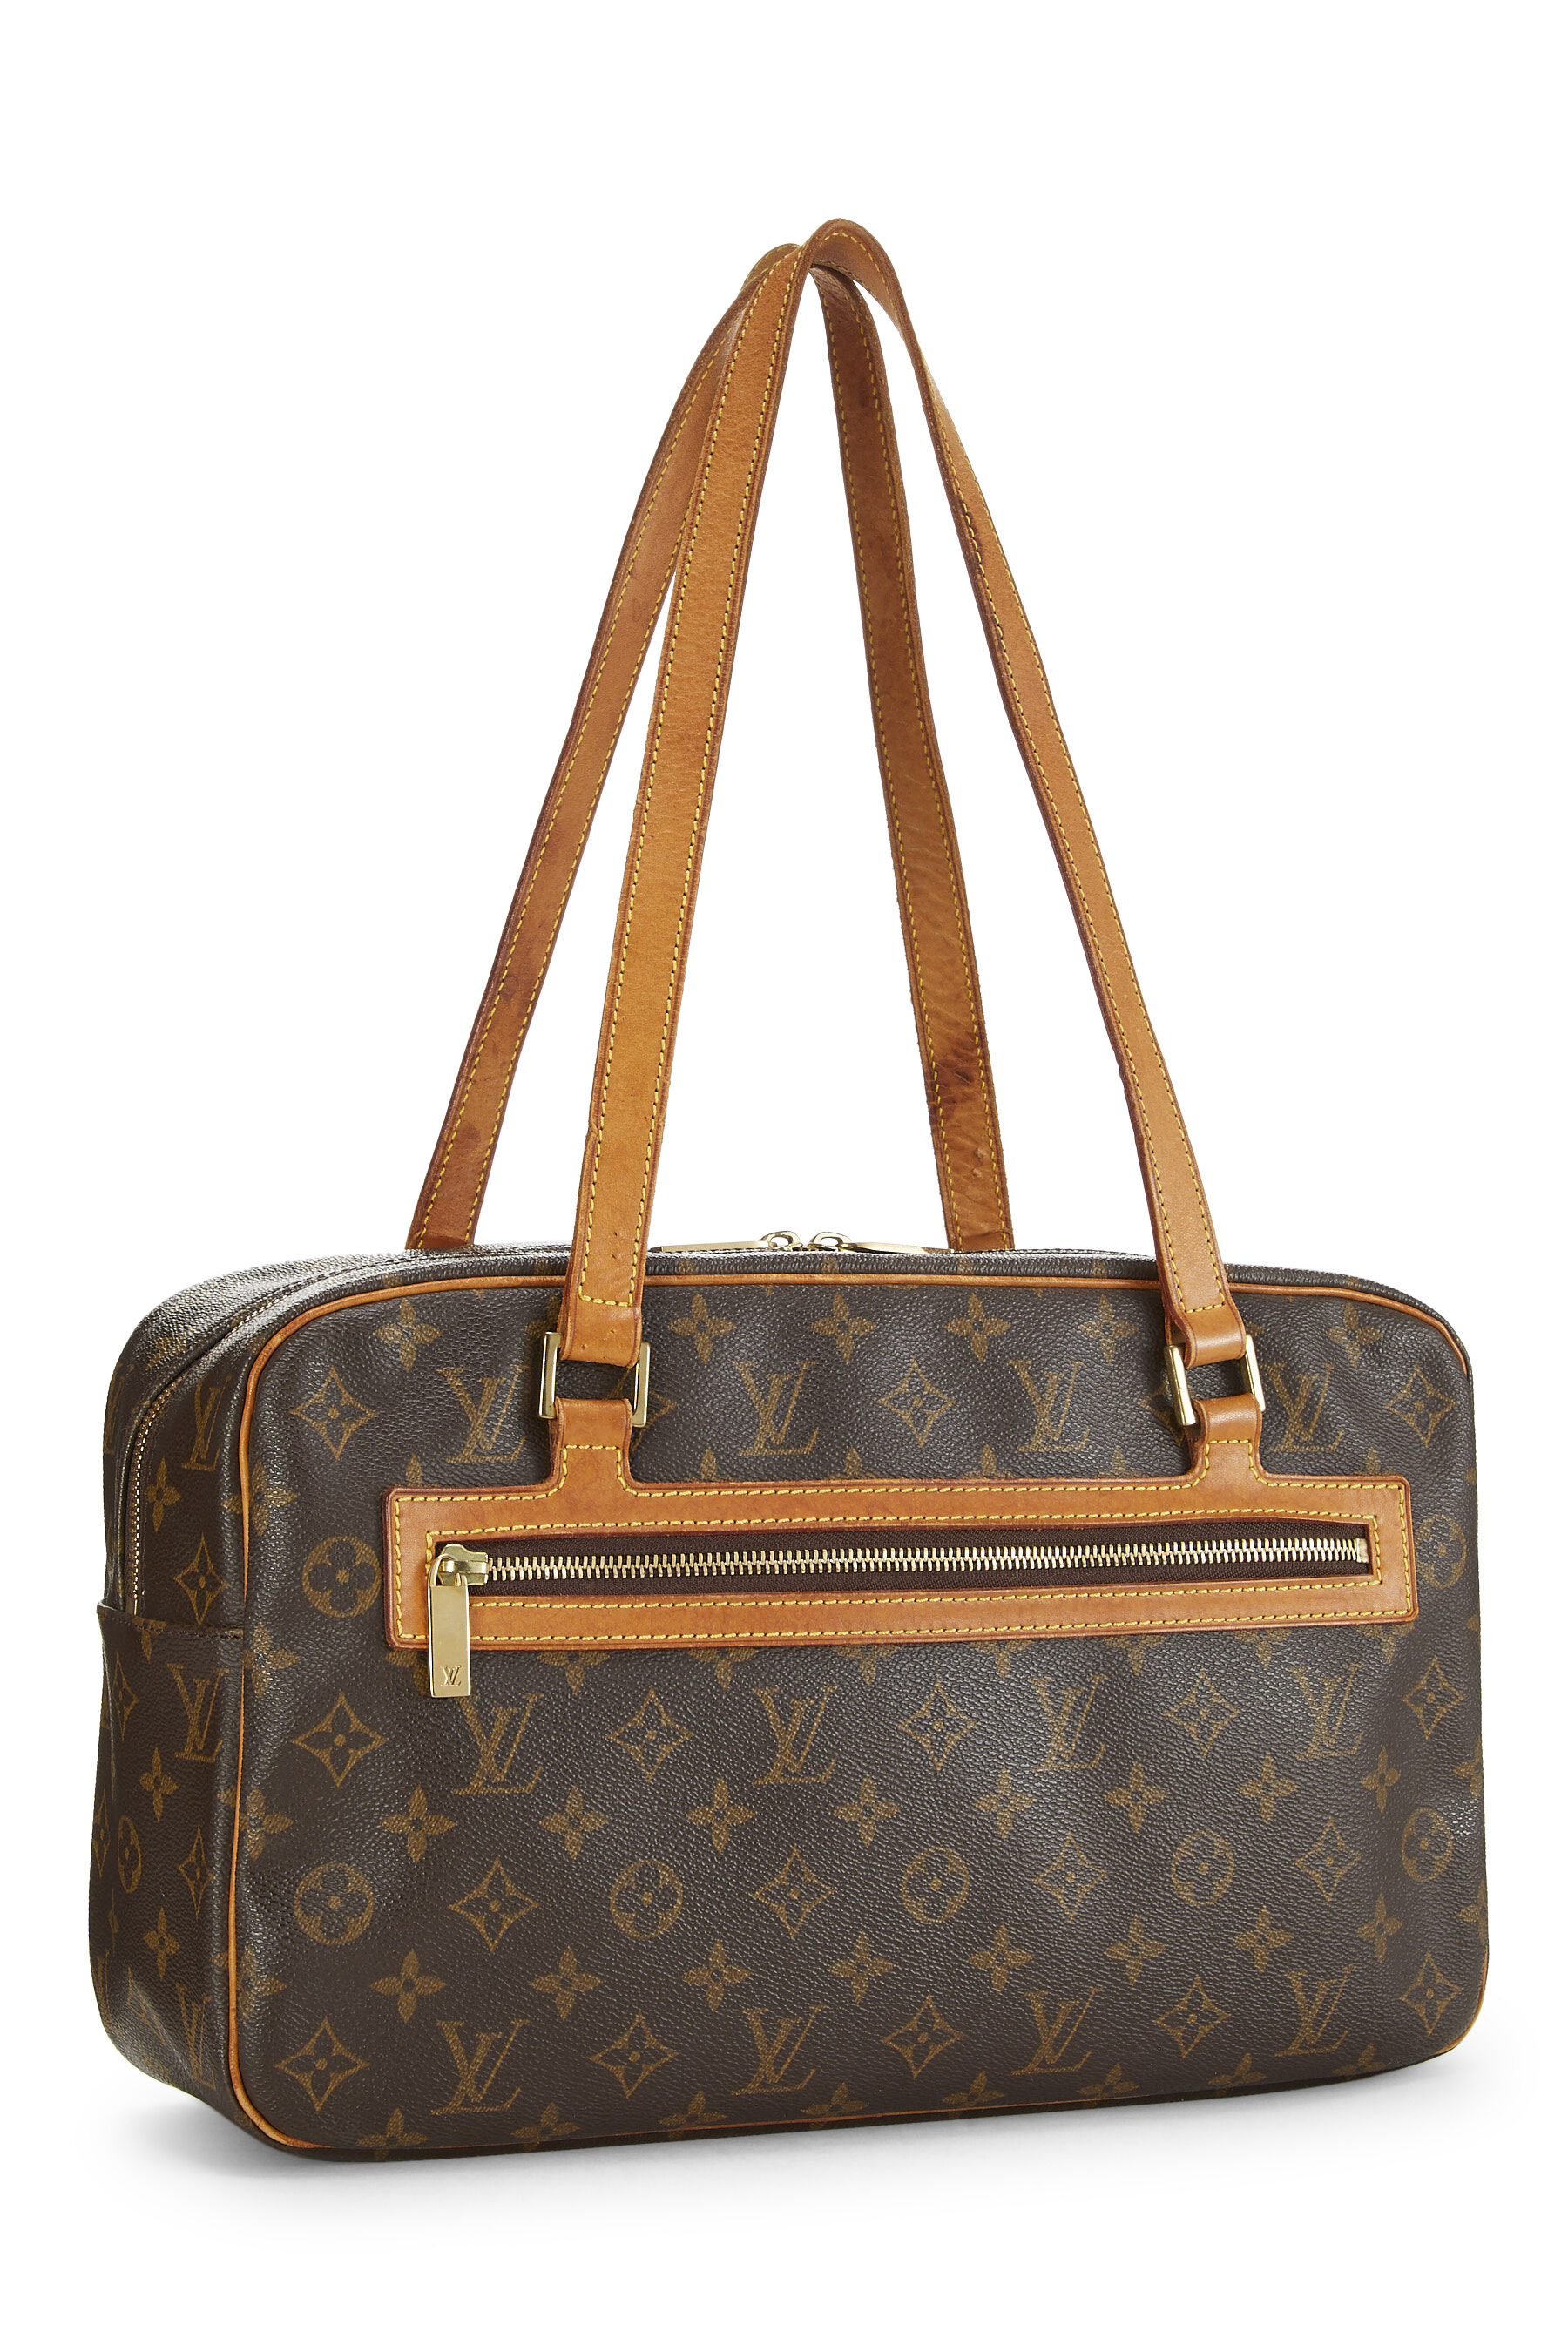 Louis Vuitton, Bags, Louis Vuitton Monogram Canvas Cite Mm